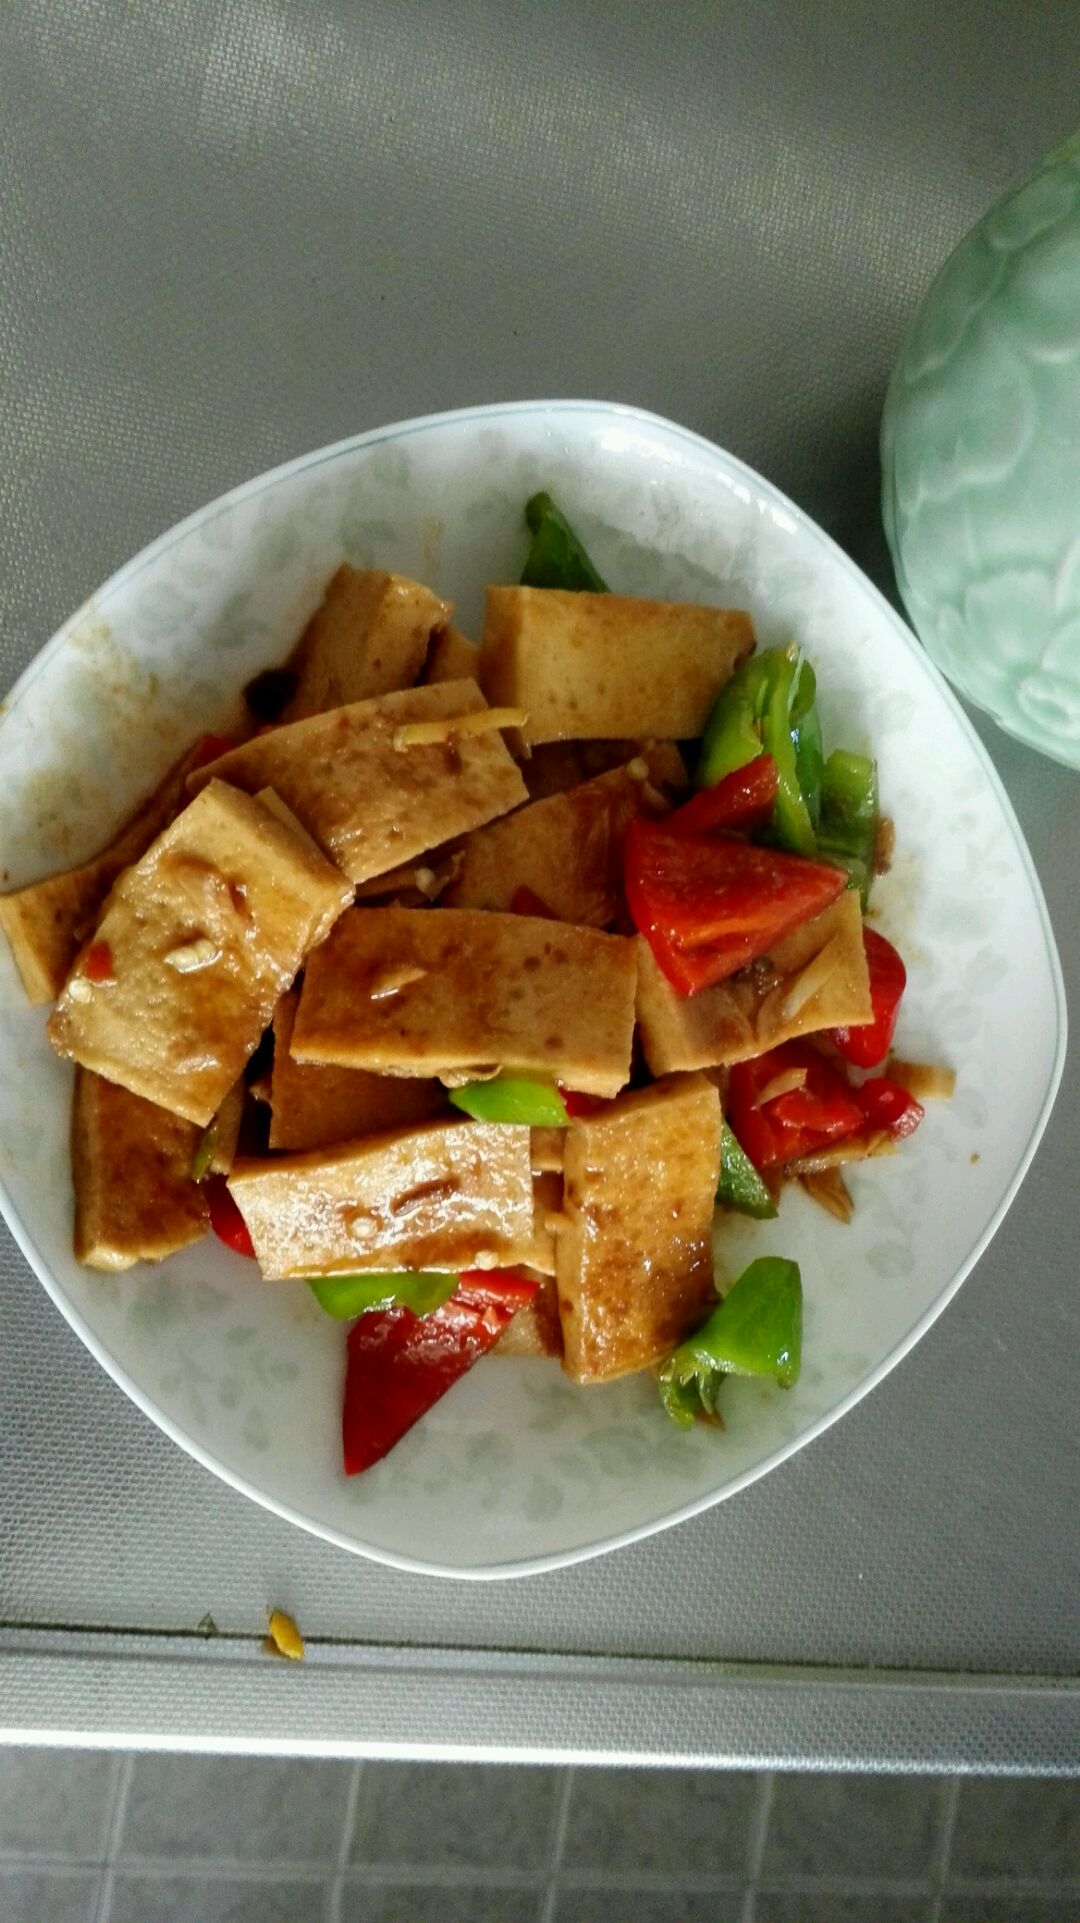 新式豆腐的干鲜美味--干锅千叶豆腐_干锅千叶豆腐_红豆厨房的日志_美食天下